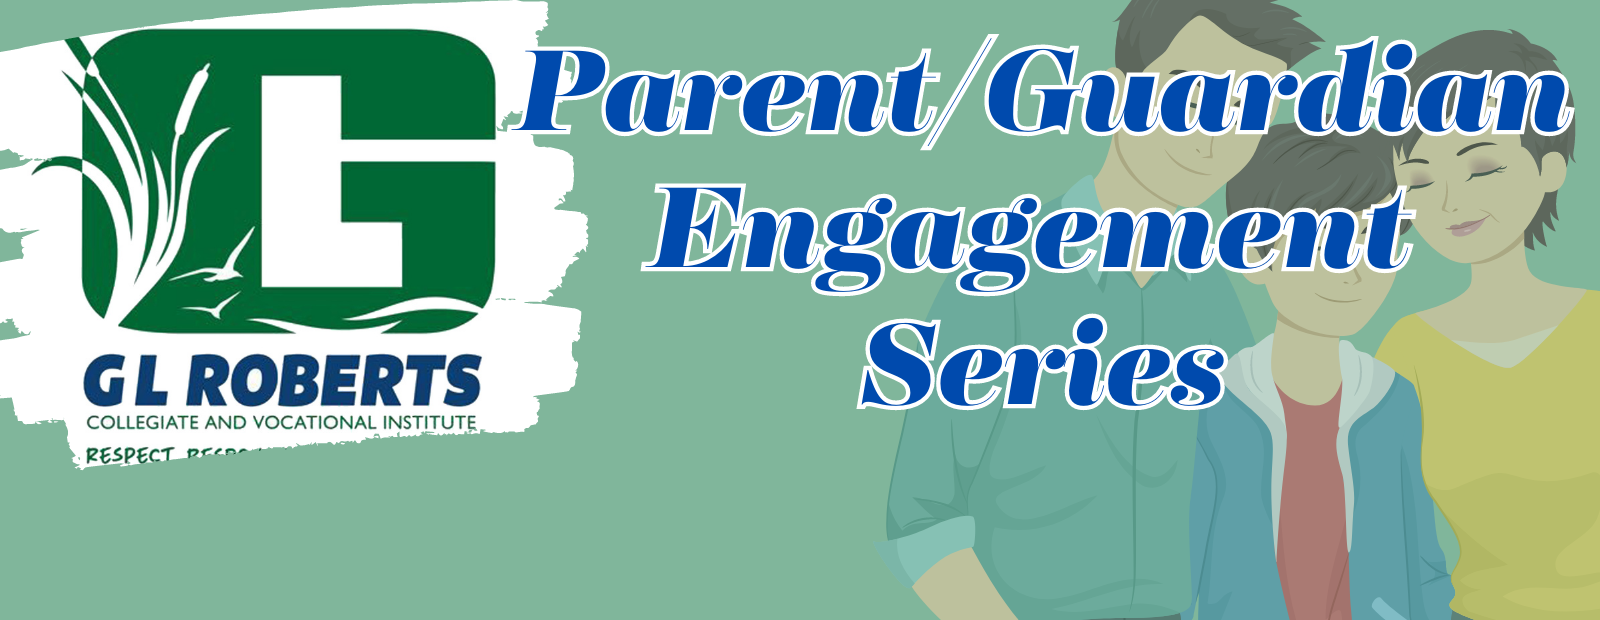 Parent/Guardian Engagement Series